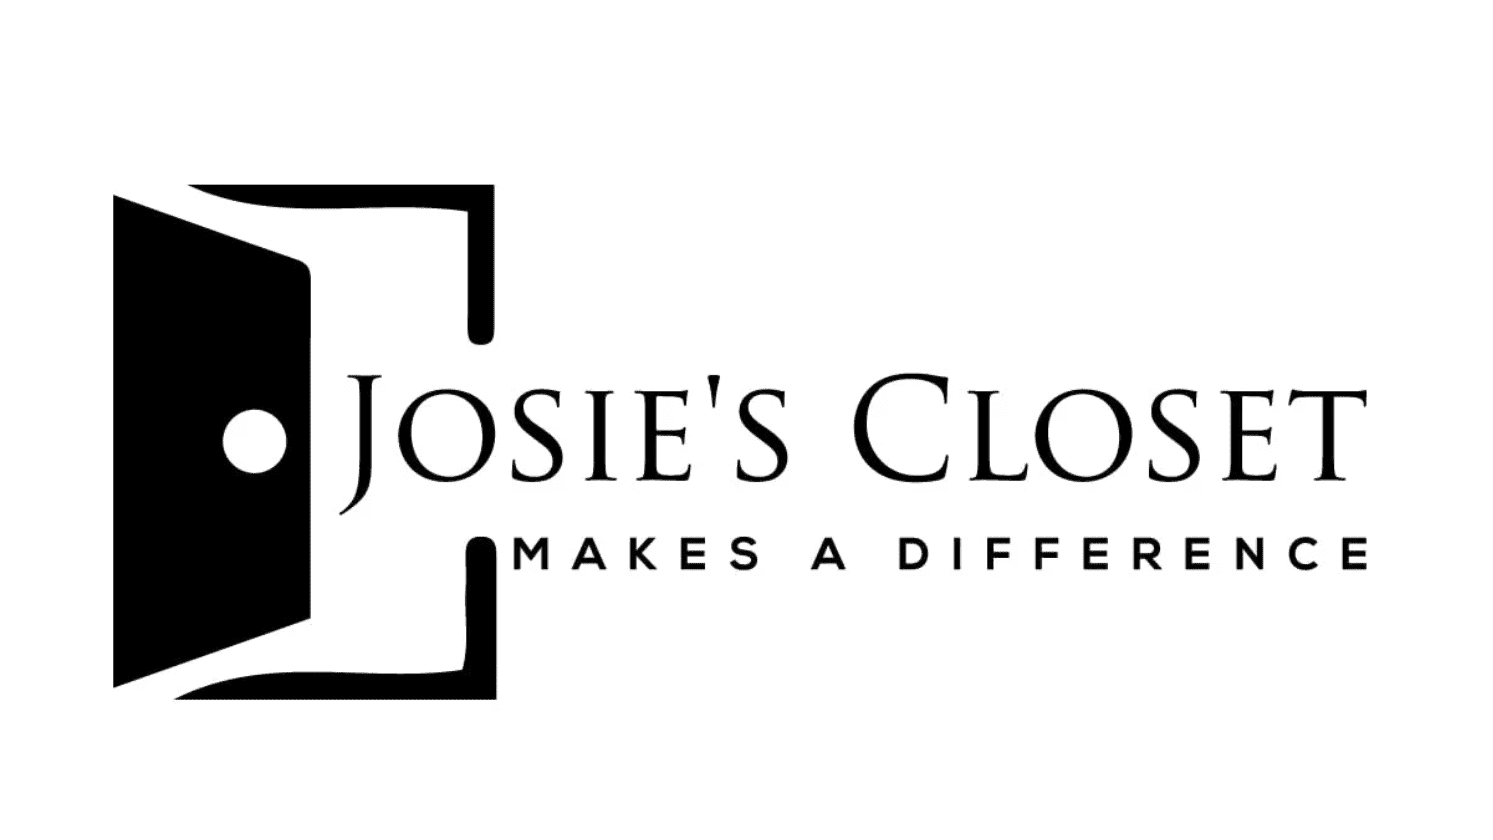 Josie's Closet